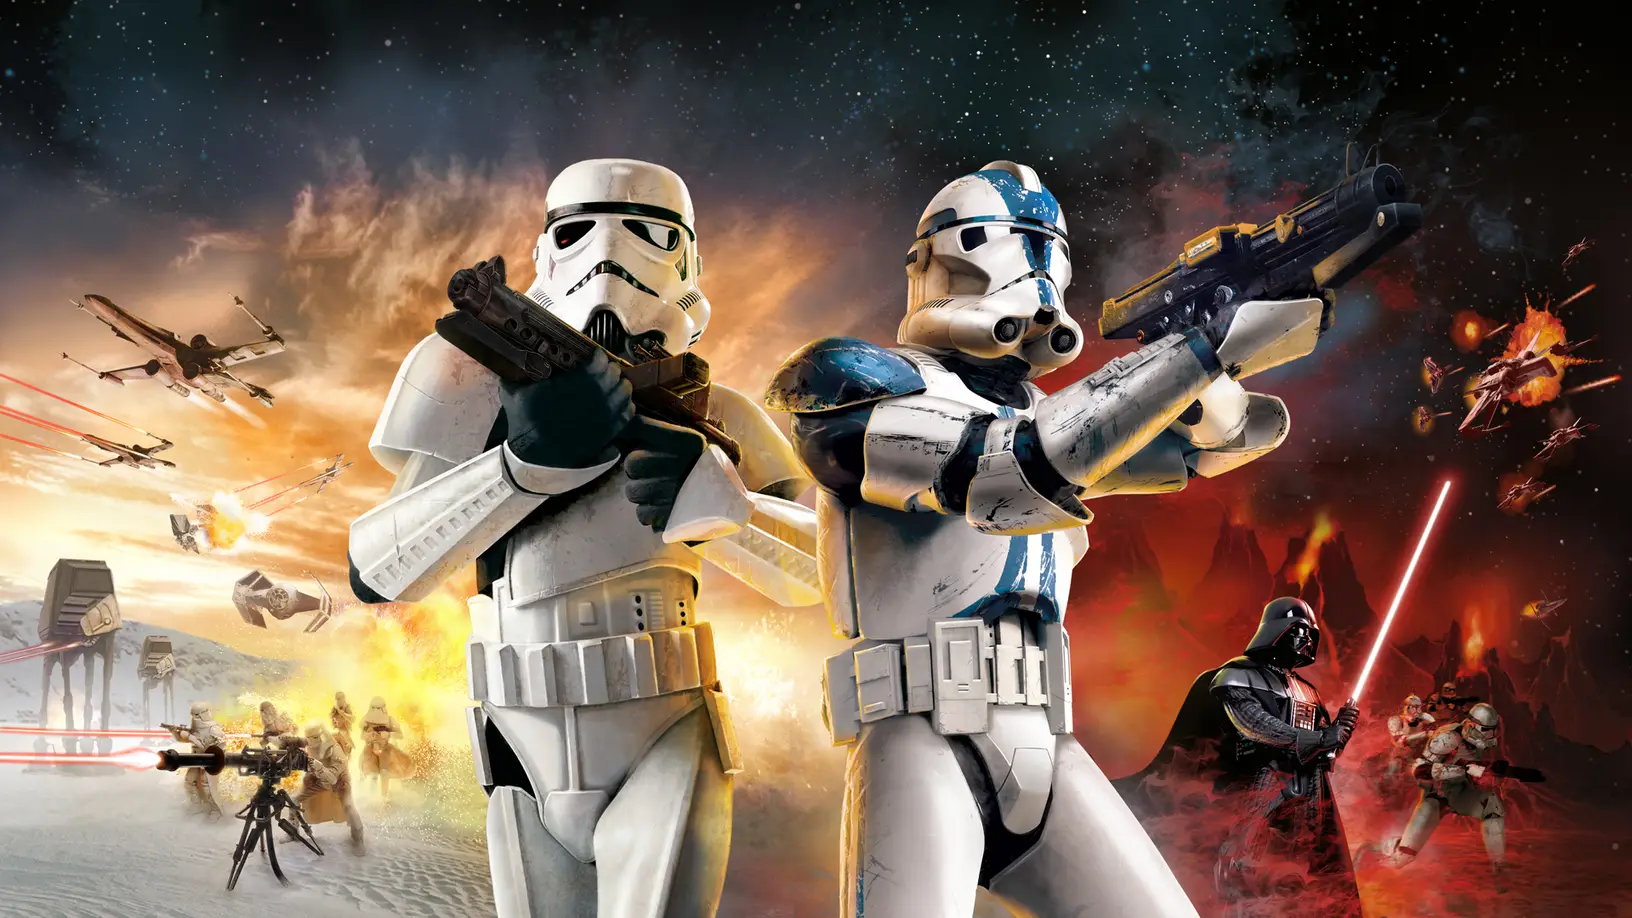 Star Wars Battlefront 2 promotional art